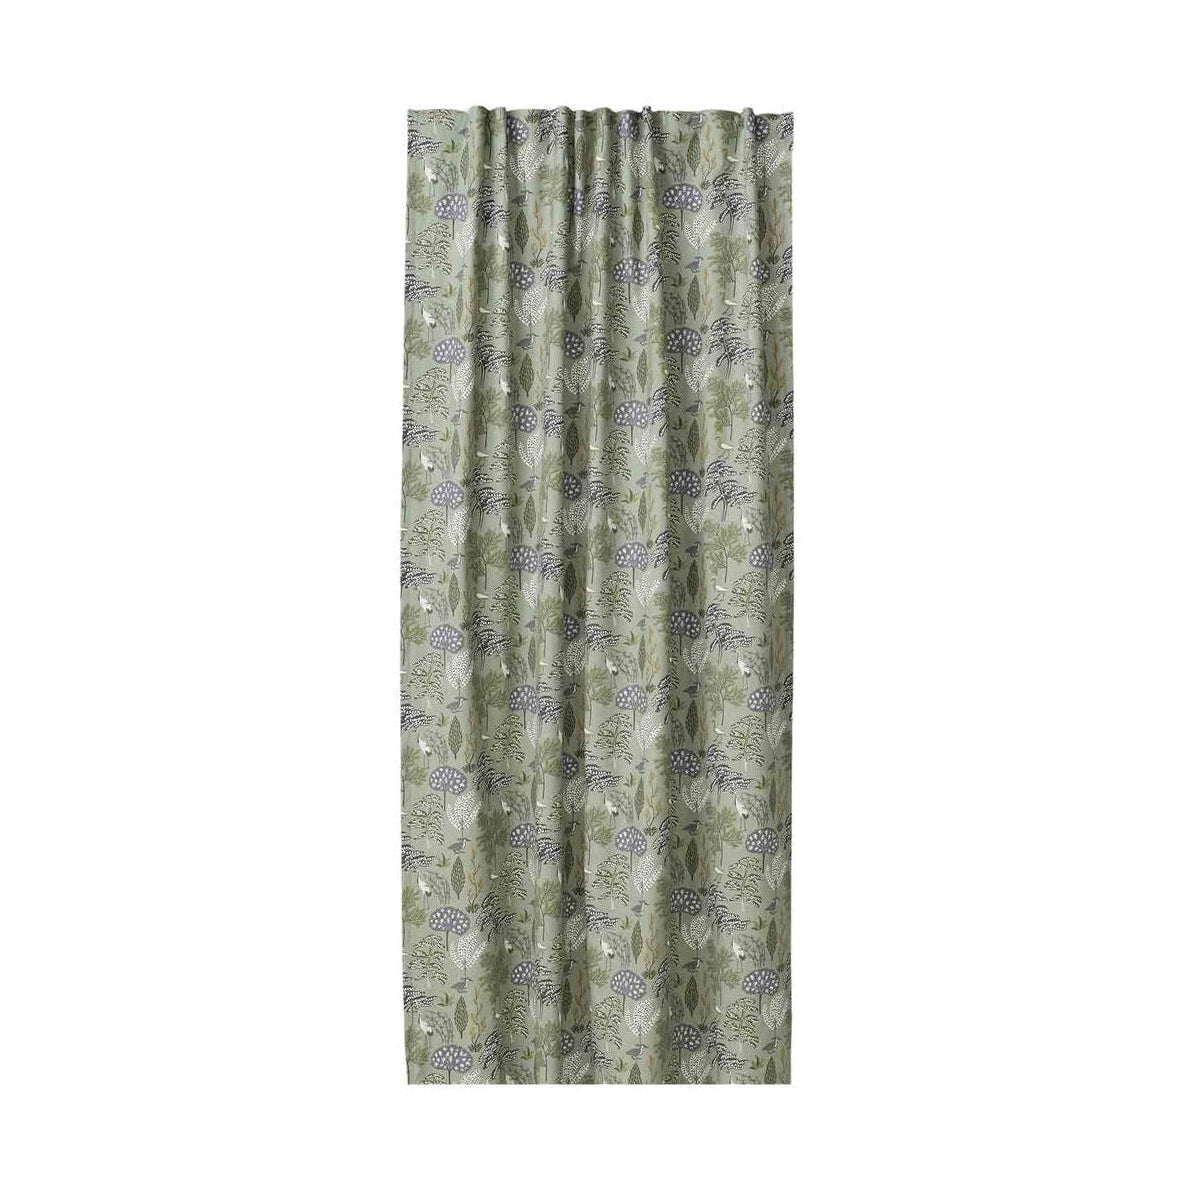 Spira Flora Curtain con multiband, verde